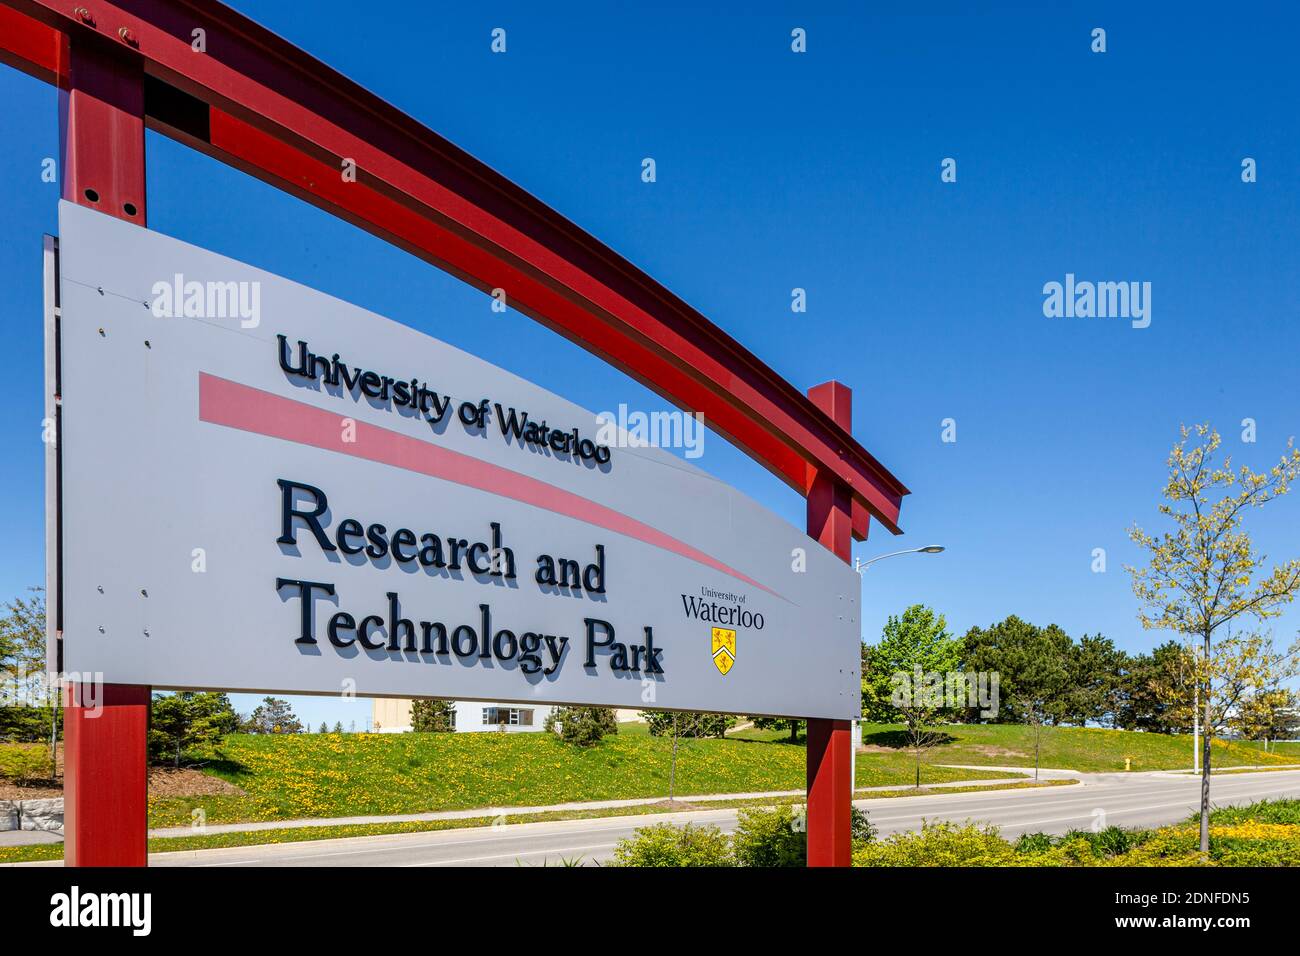 Universidad de Waterloo Investigación y Tecnología Parque Signage. Foto de stock